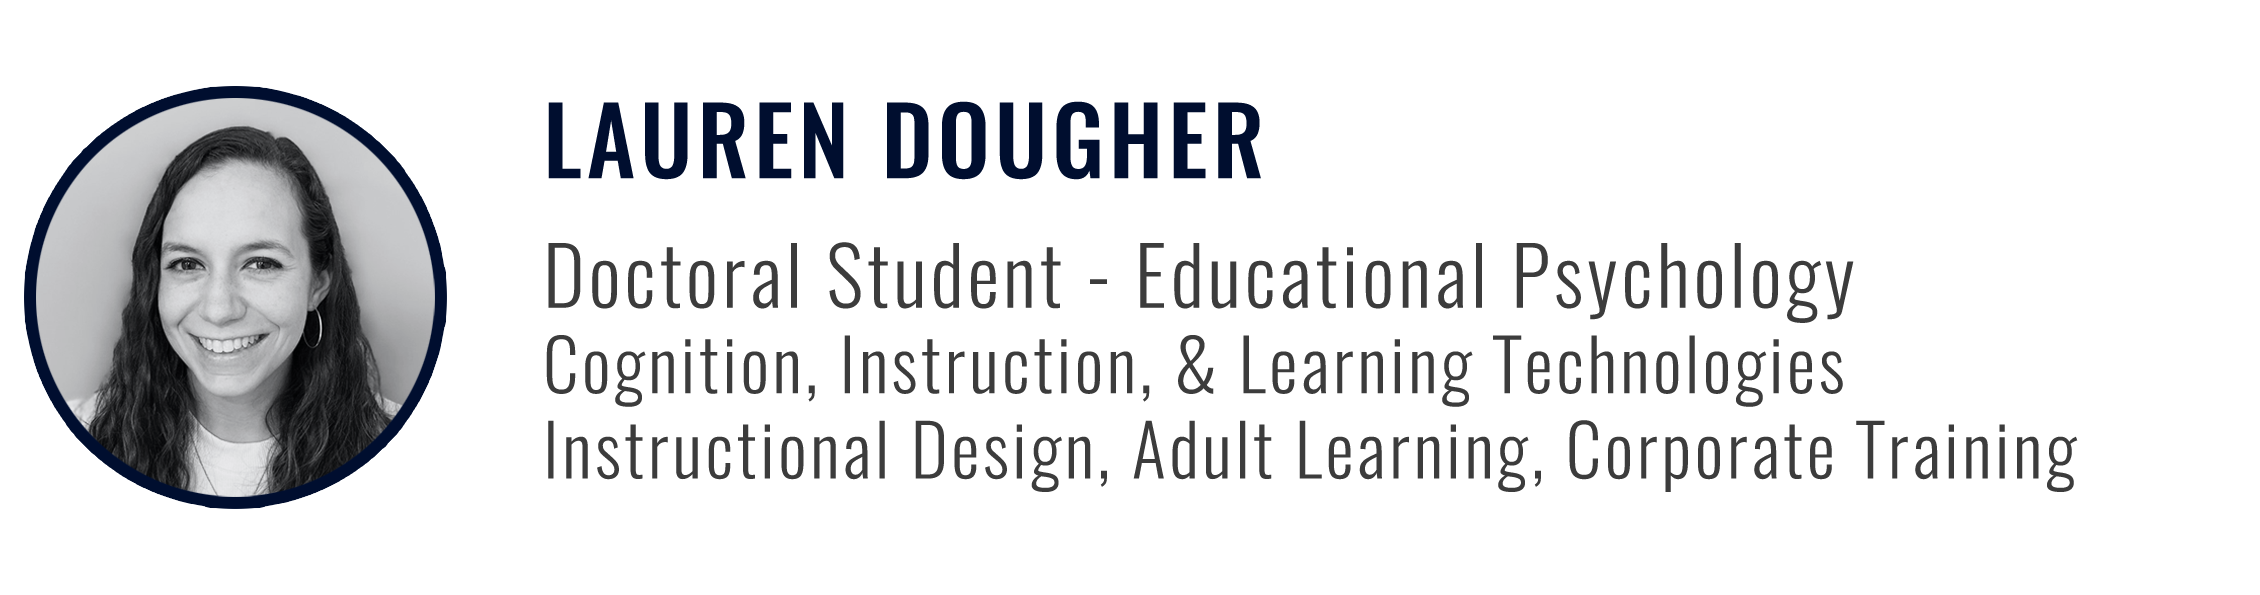 Lauren Dougher - Graduate Student